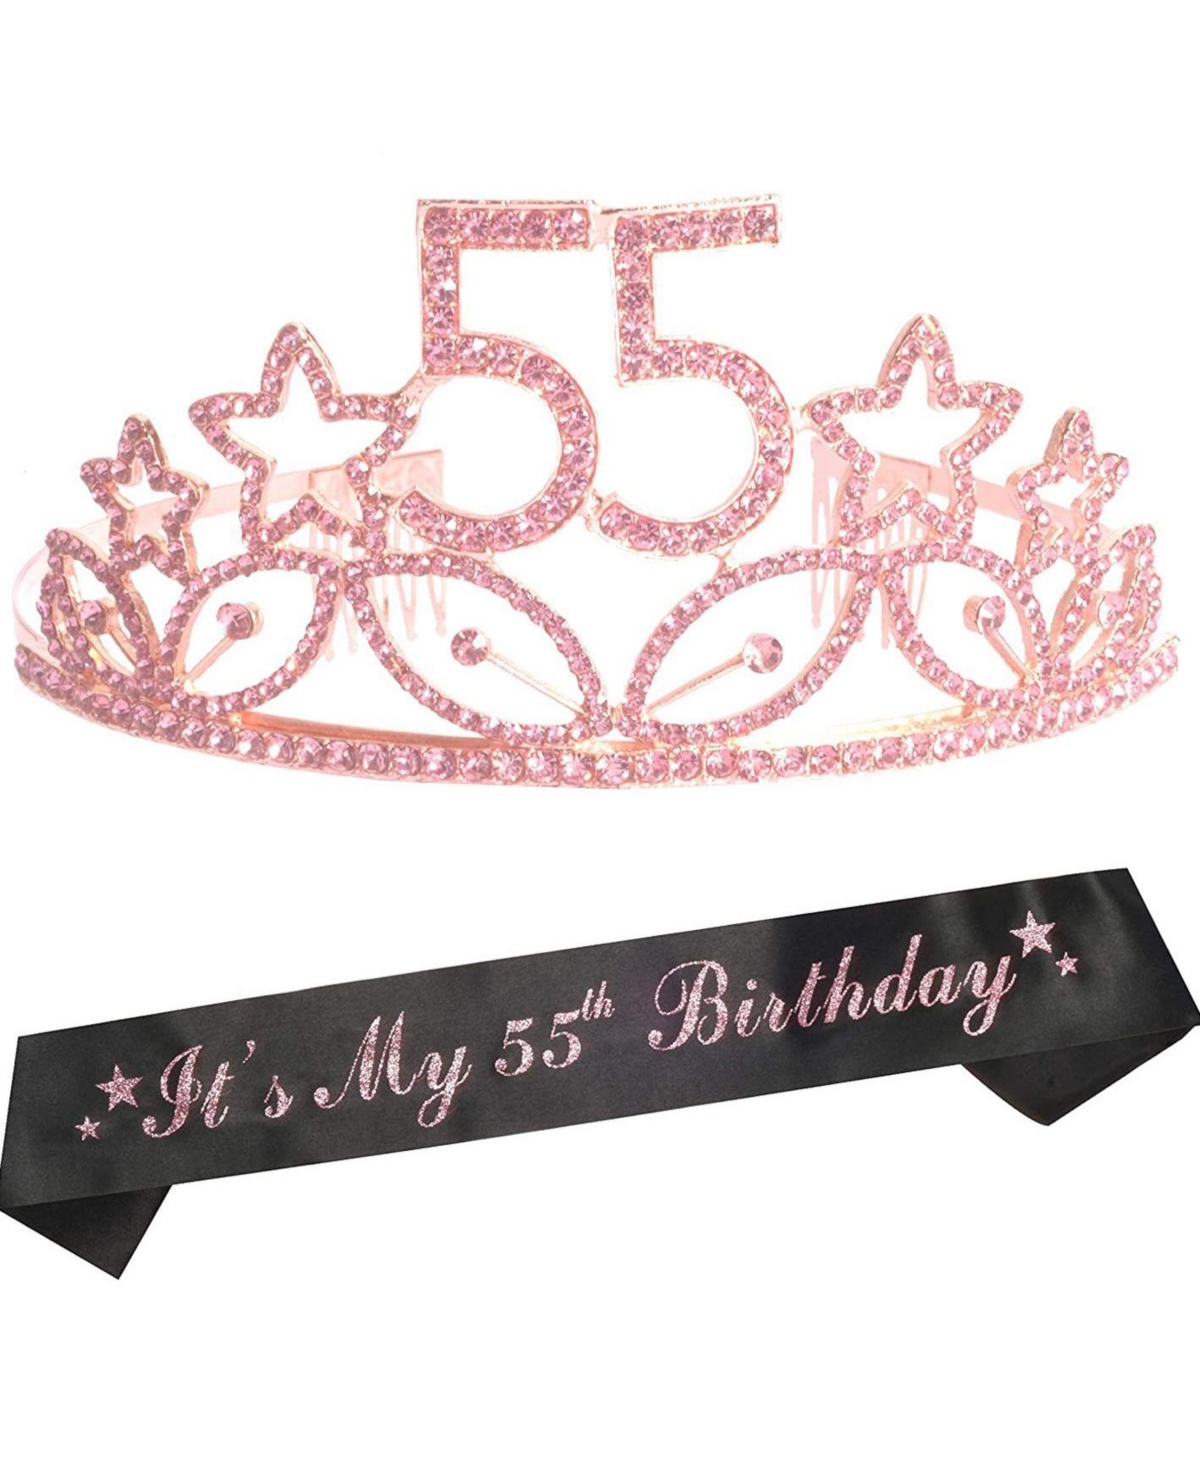 55th Birthday Sash and Tiara for Women - Fabulous Glitter Sash + Stars Rhinestone Pink Premium Metal Tiara for Her, 55th Birthday Gifts for